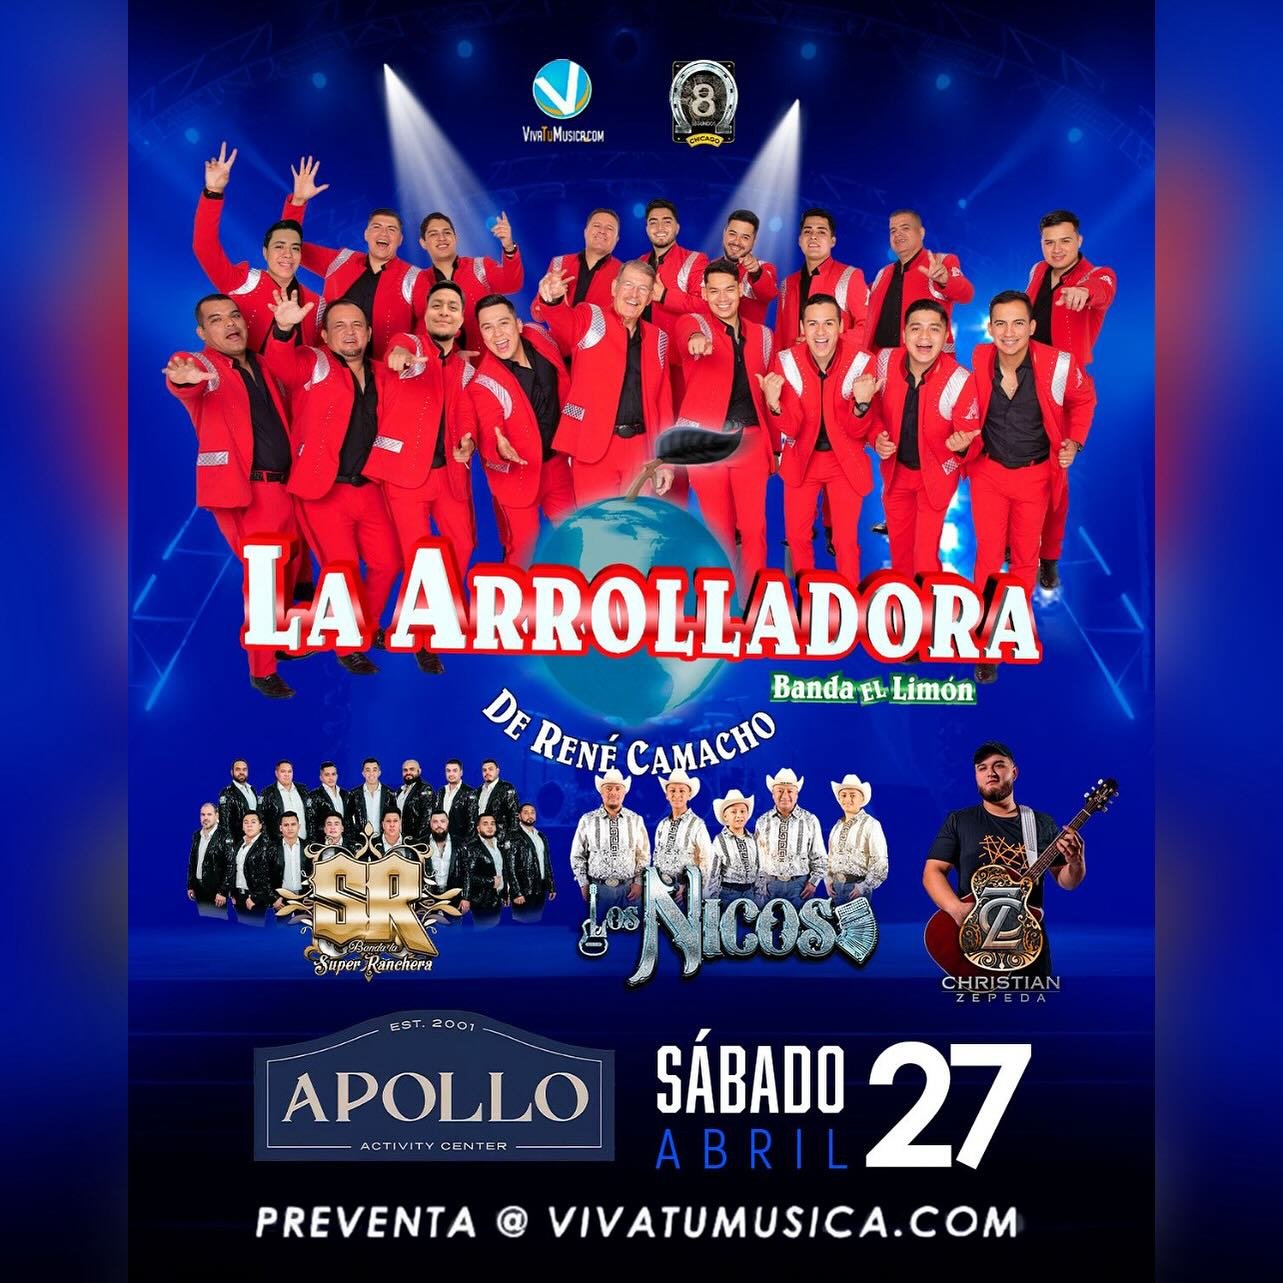 Sabado 27 de Abril llega LA ARROLLADORA 🇲🇽 con Banda La SR, Los Nicos, y Christian Zepeda 

Tickets &amp; VIP &raquo; apolloactivitycenter.com | 17+ Event